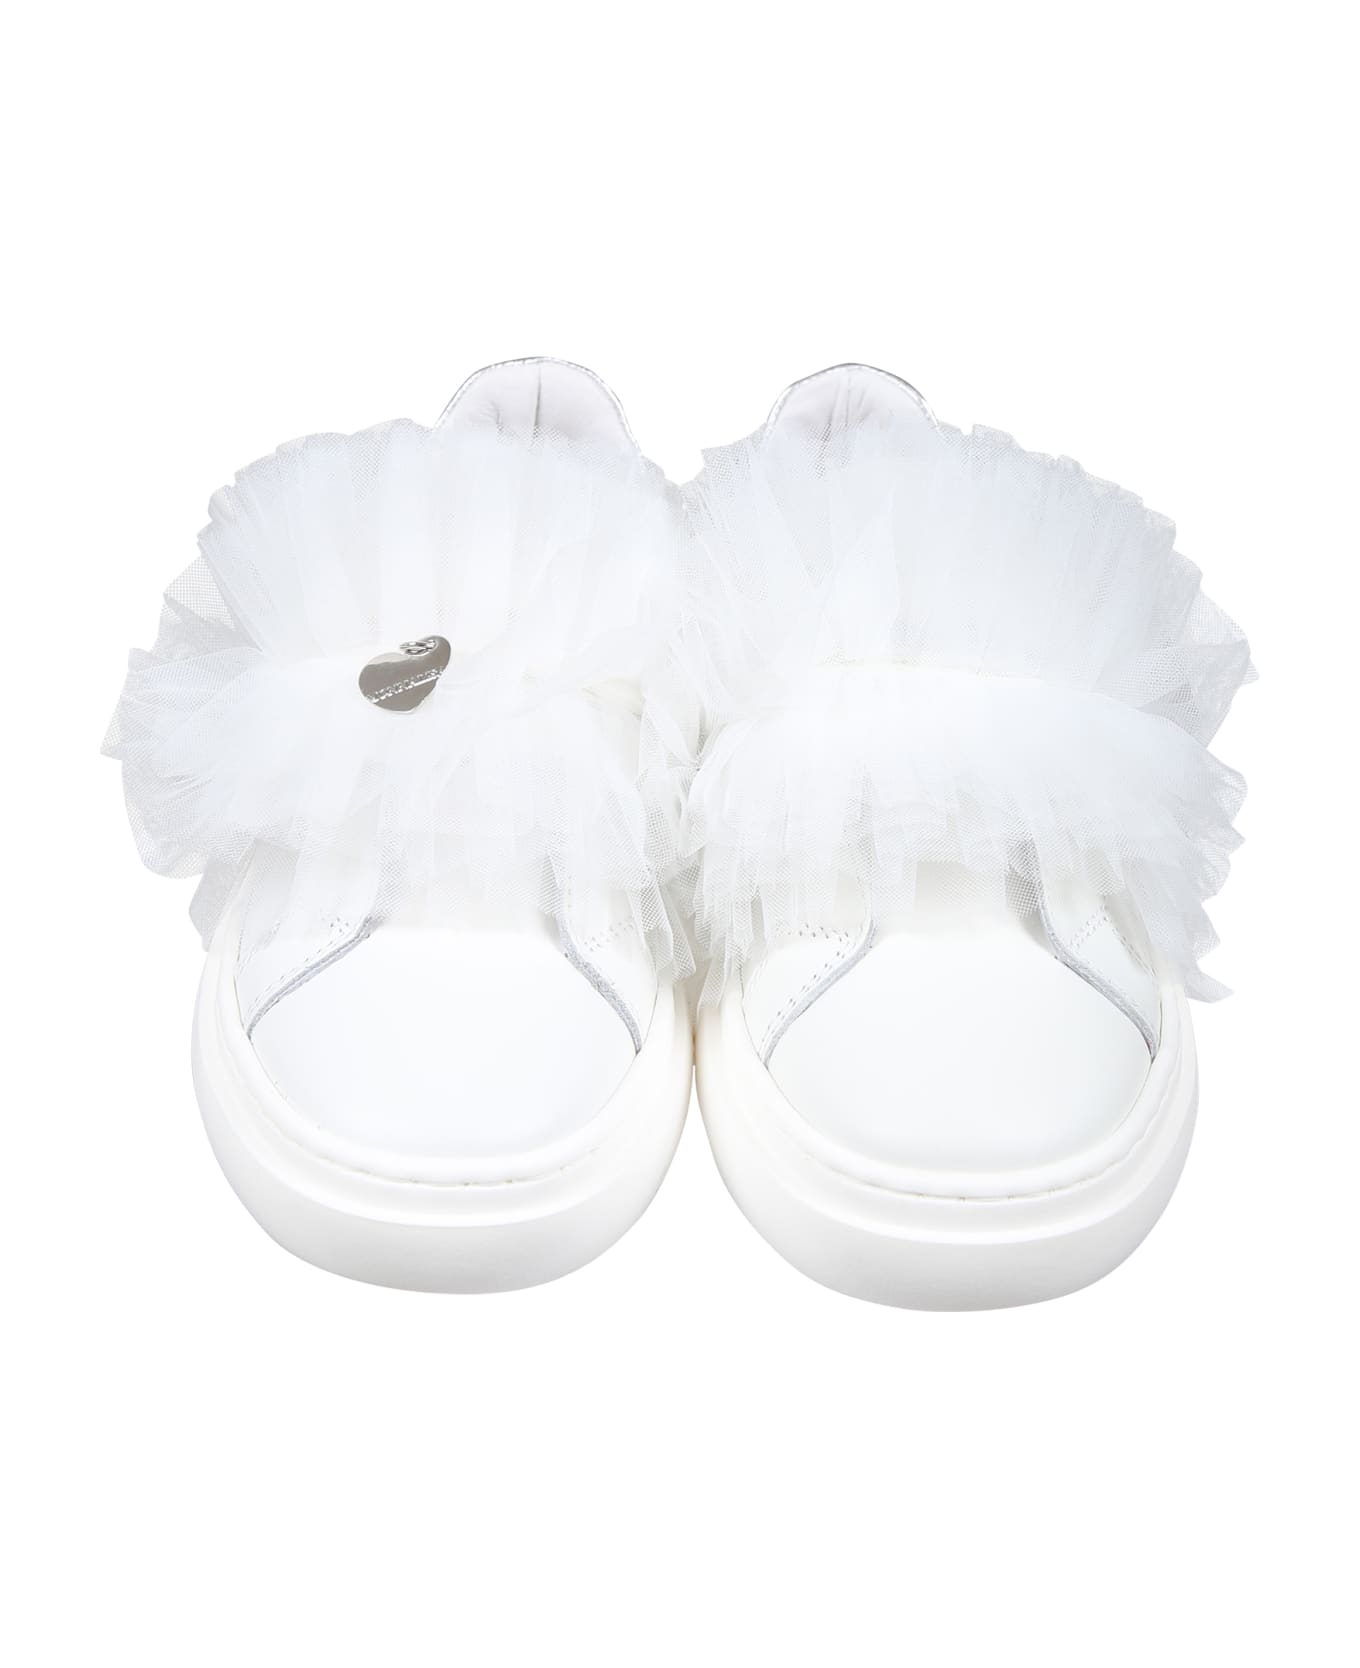 Monnalisa White Sneakers For Girl Avec Tulle Bow - White シューズ